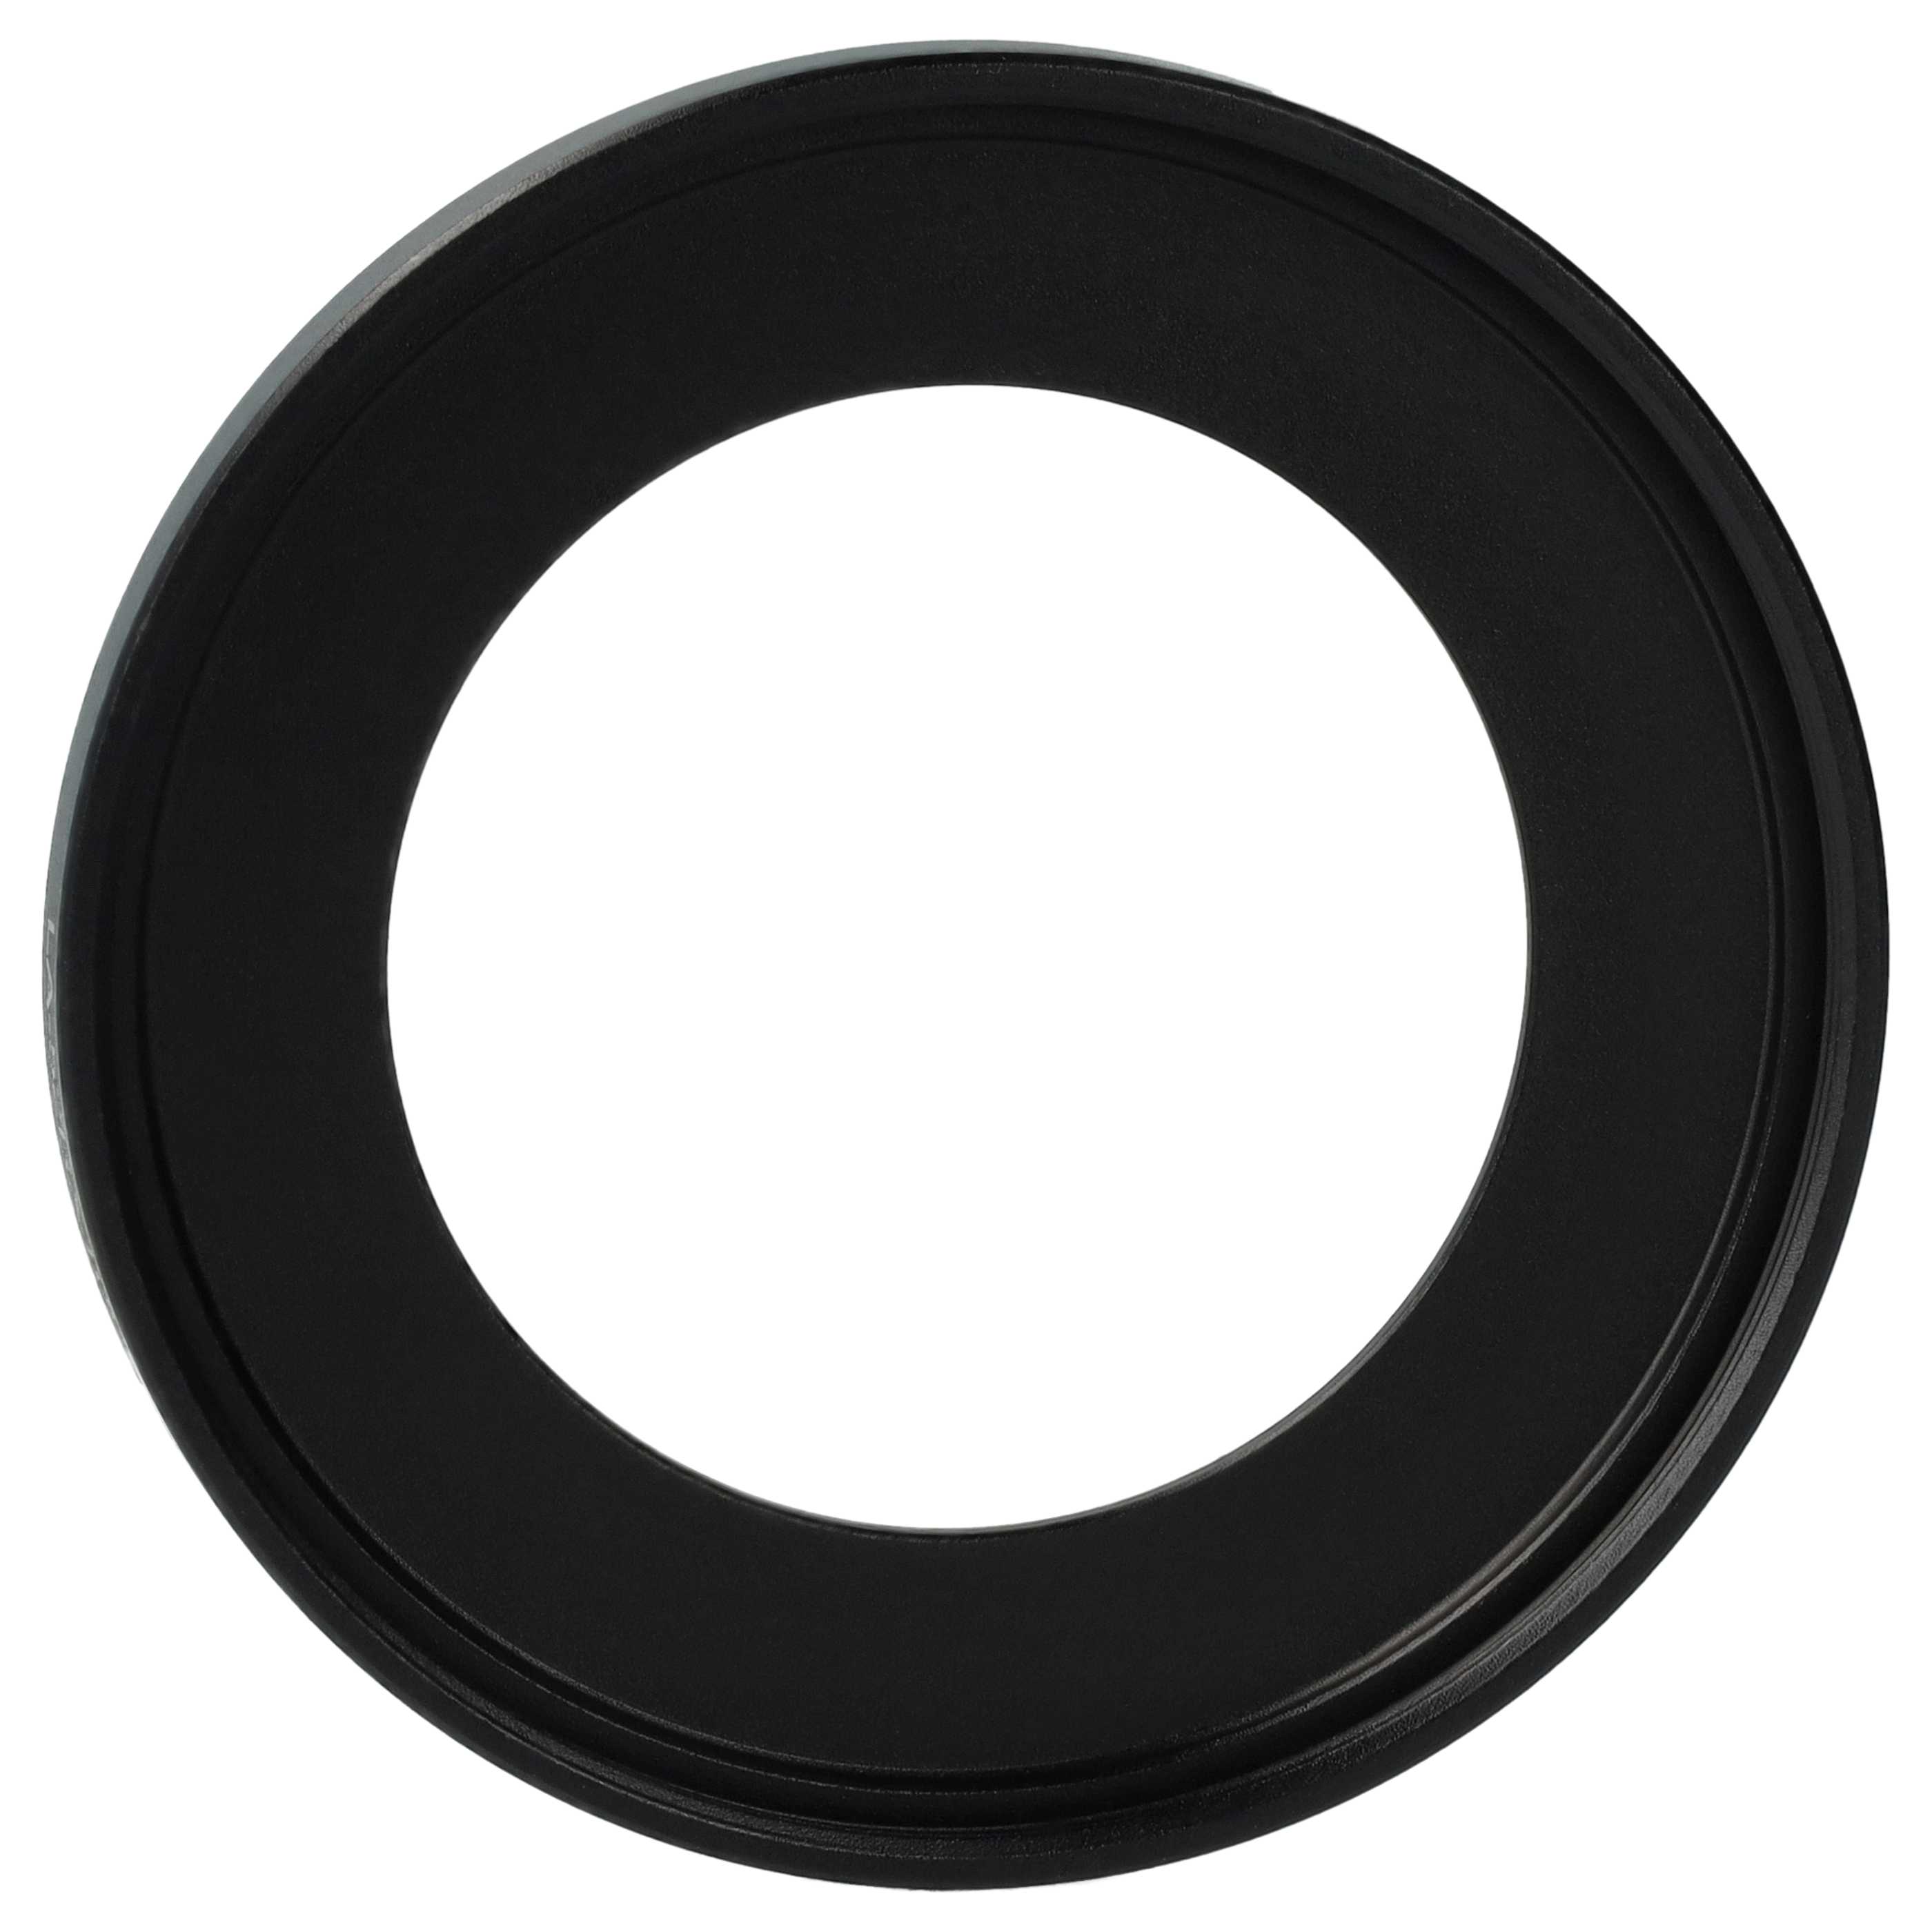 Adattatore filtro 52 mm sostituisce Sony LA-52RX100 per obbiettivo fotocamera